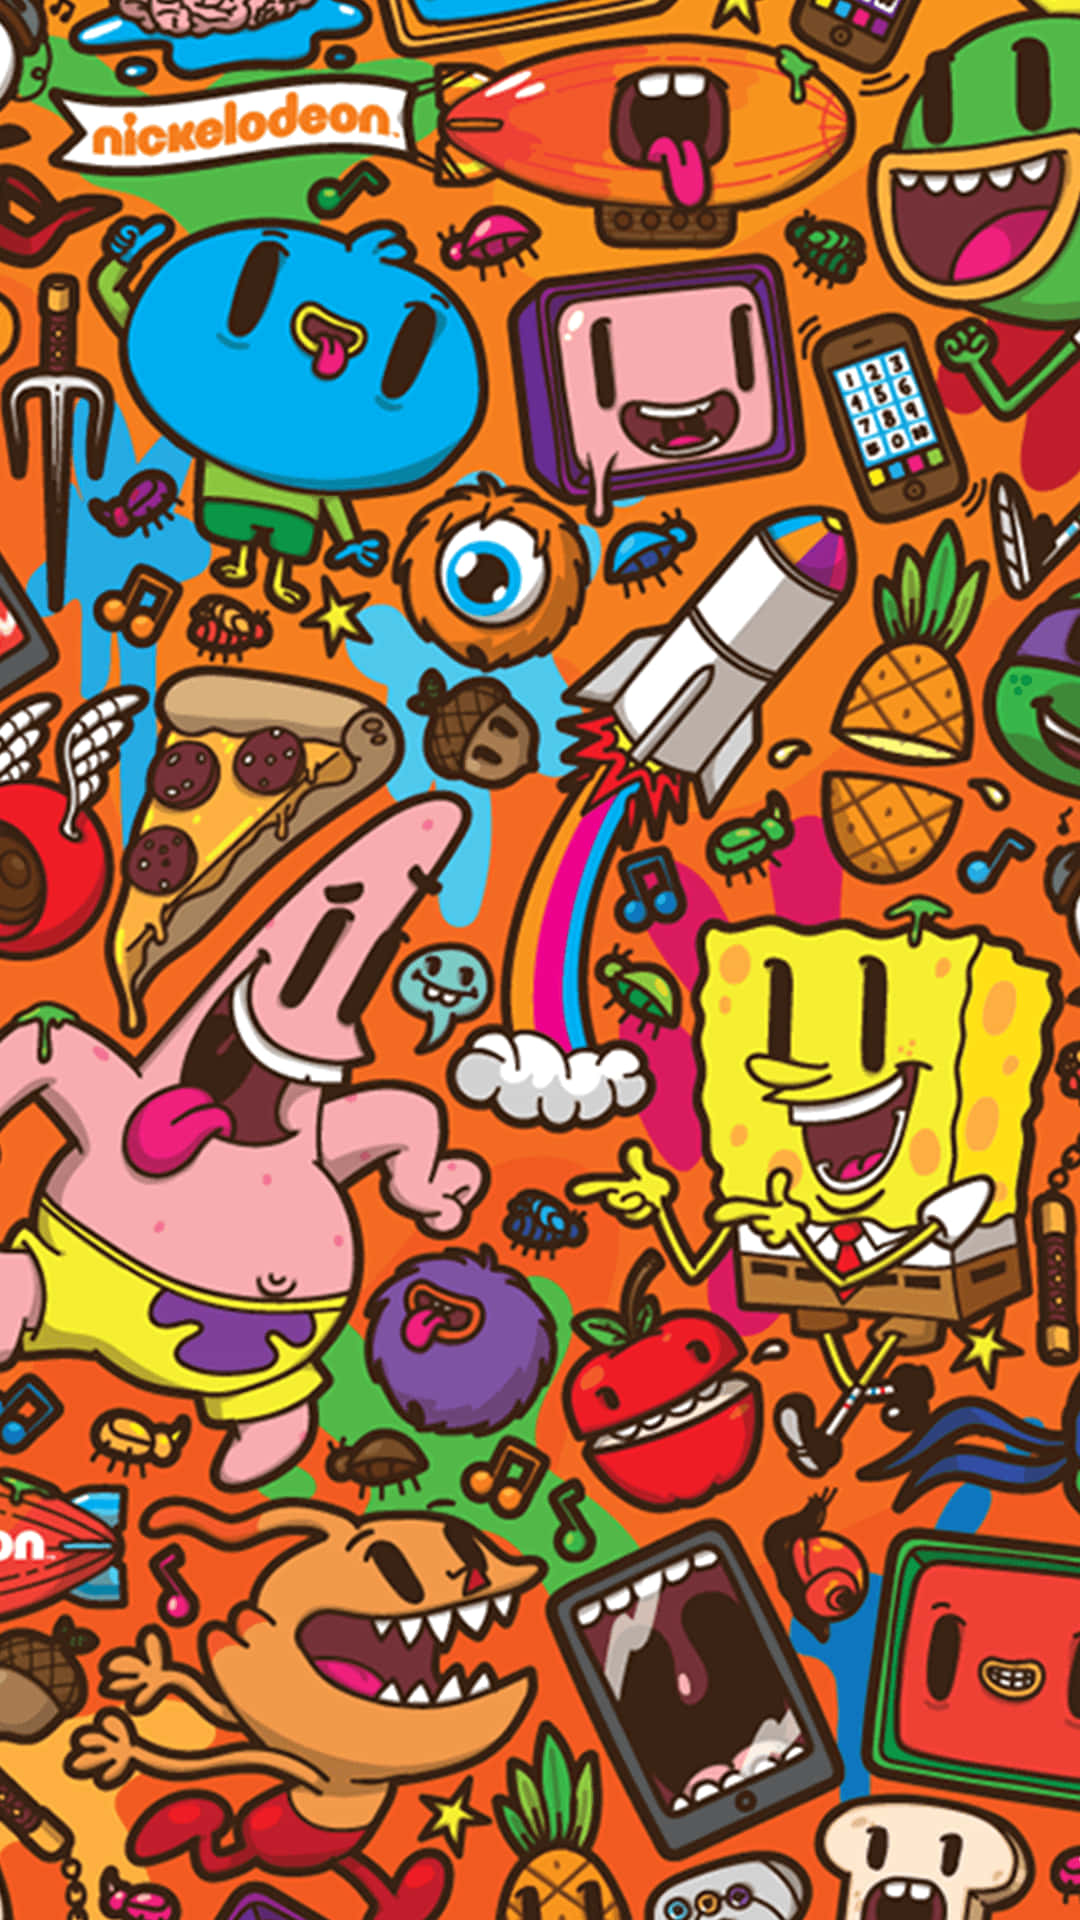 Imagende Spongebob Con Arte Doodle